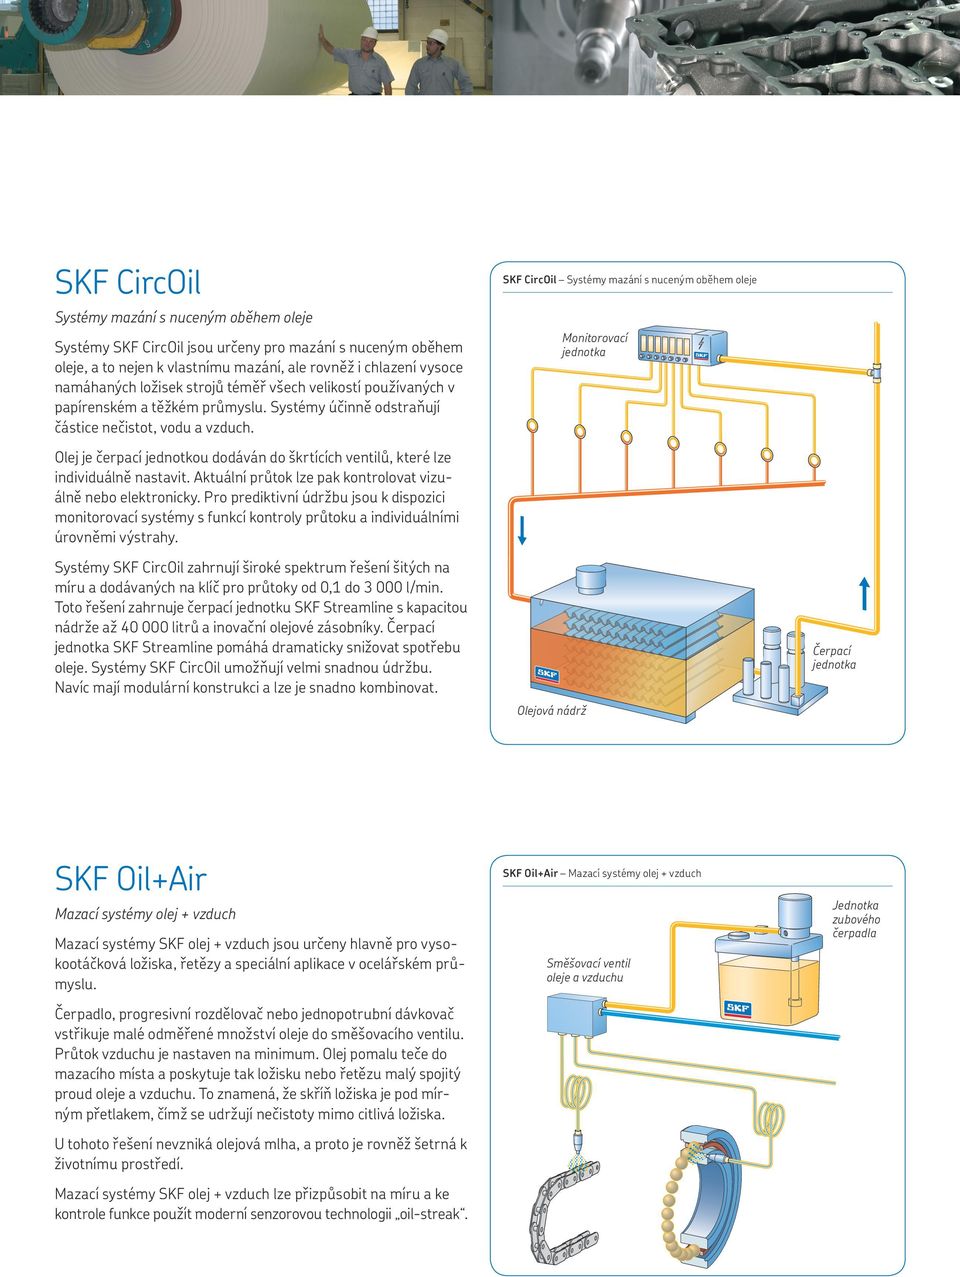 SKF CircOil Systémy mazání s nuceným oběhem oleje Monitorovací jednotka Olej je čerpací jednotkou dodáván do škrtících ventilů, které lze individuálně nastavit.